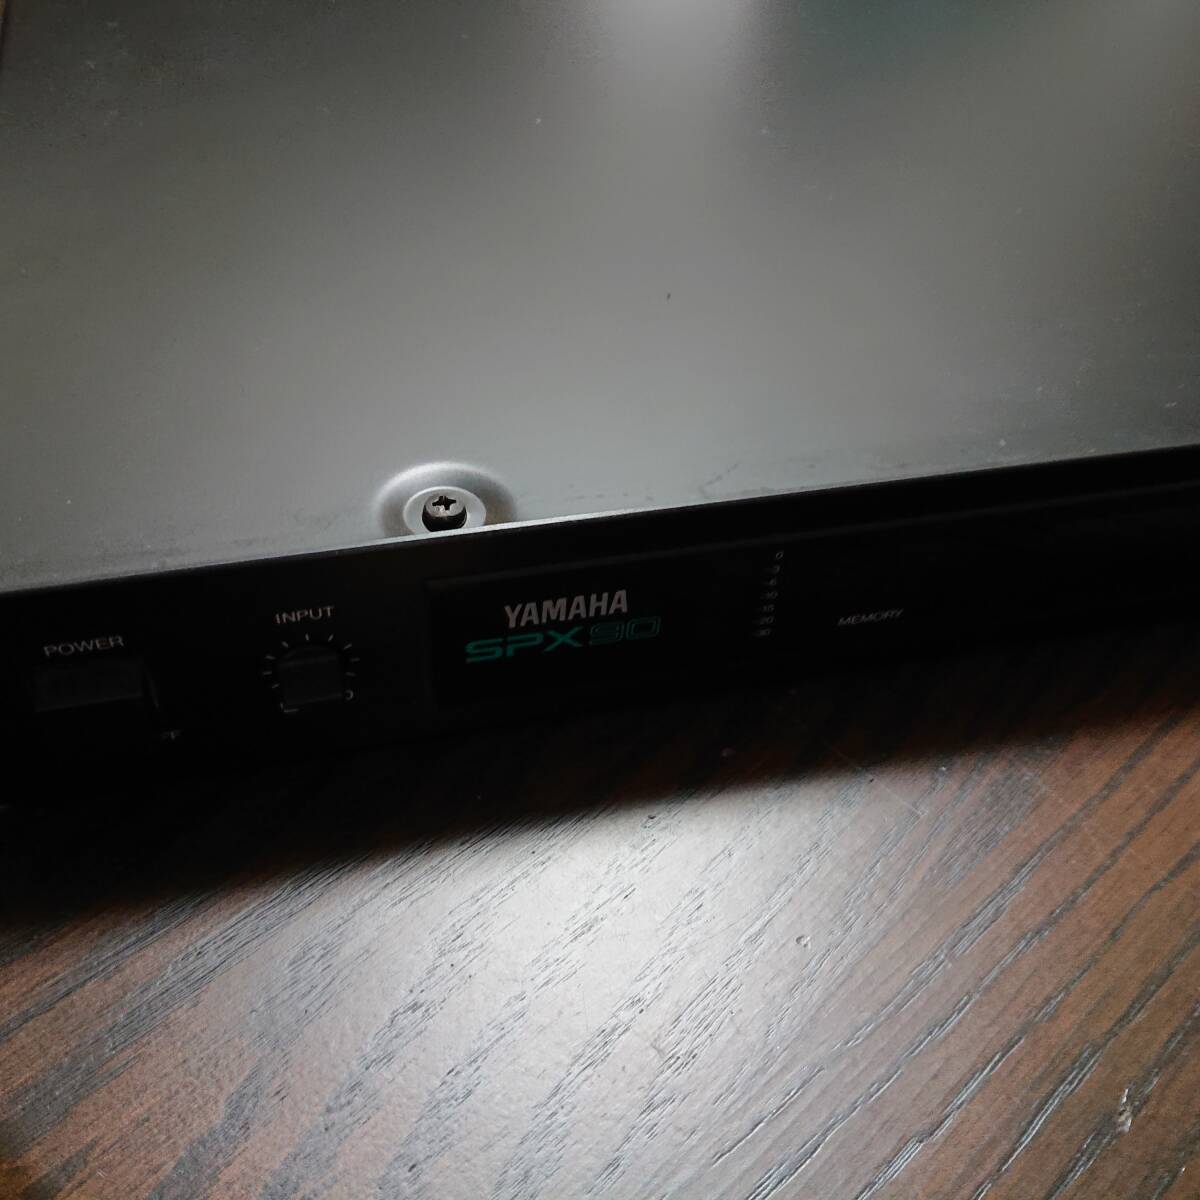 YAMAHA Yamaha цифровой звук процессор SPX90 электризация проверка утиль 